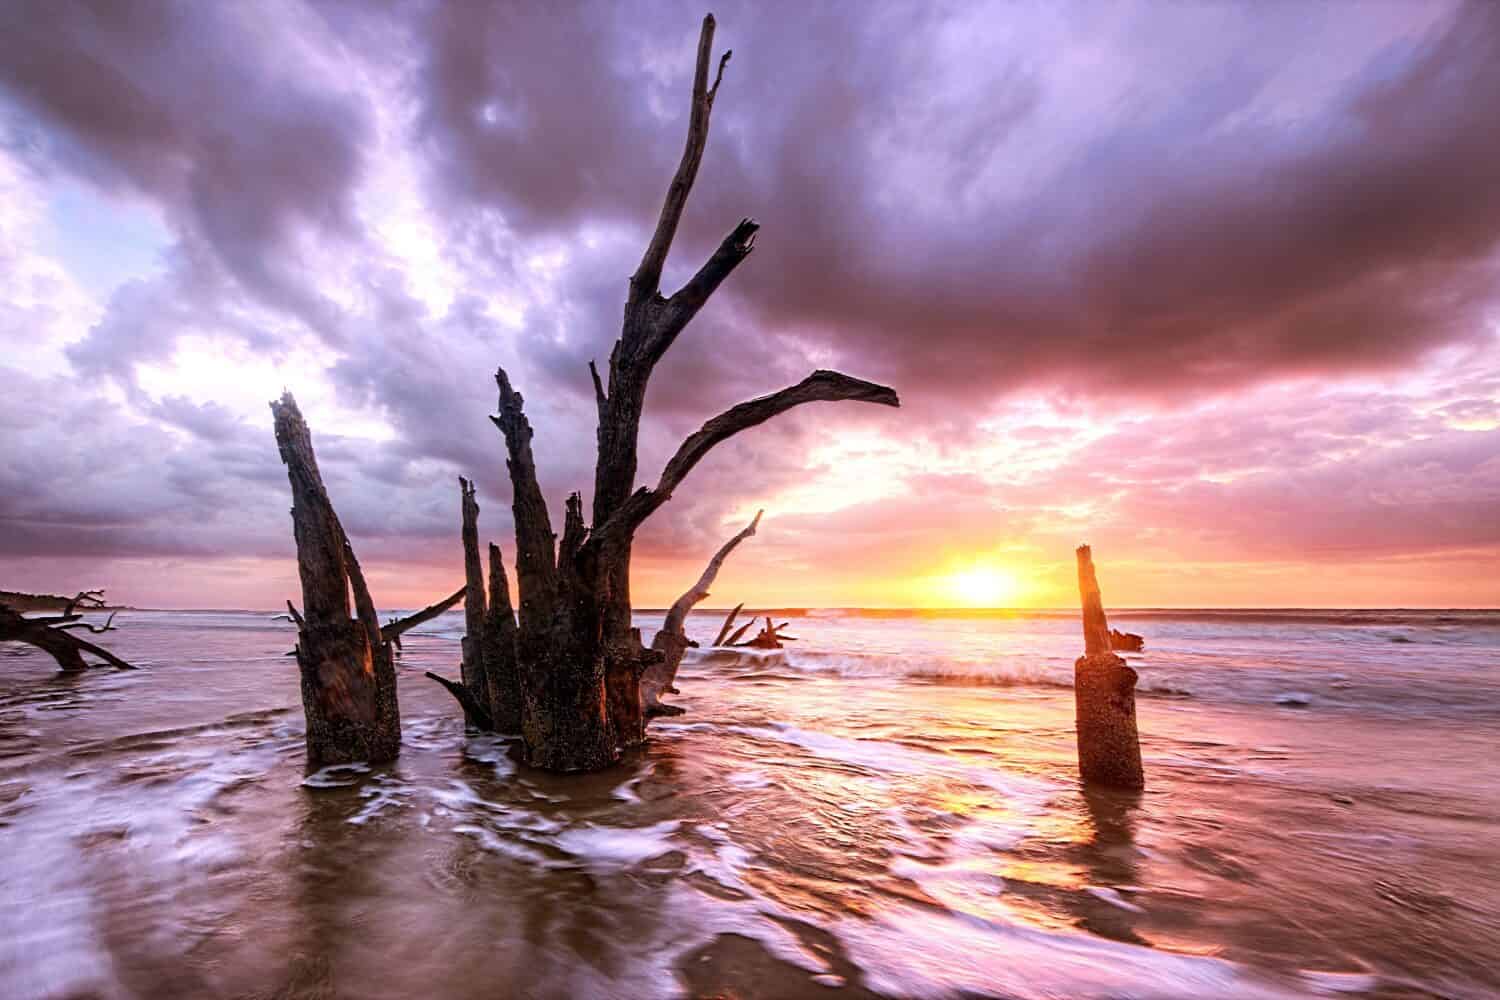 Una vista mozzafiato degli alberi morti nell'oceano dell'alta marea sull'isola di Sapelo, in Georgia, durante l'alba